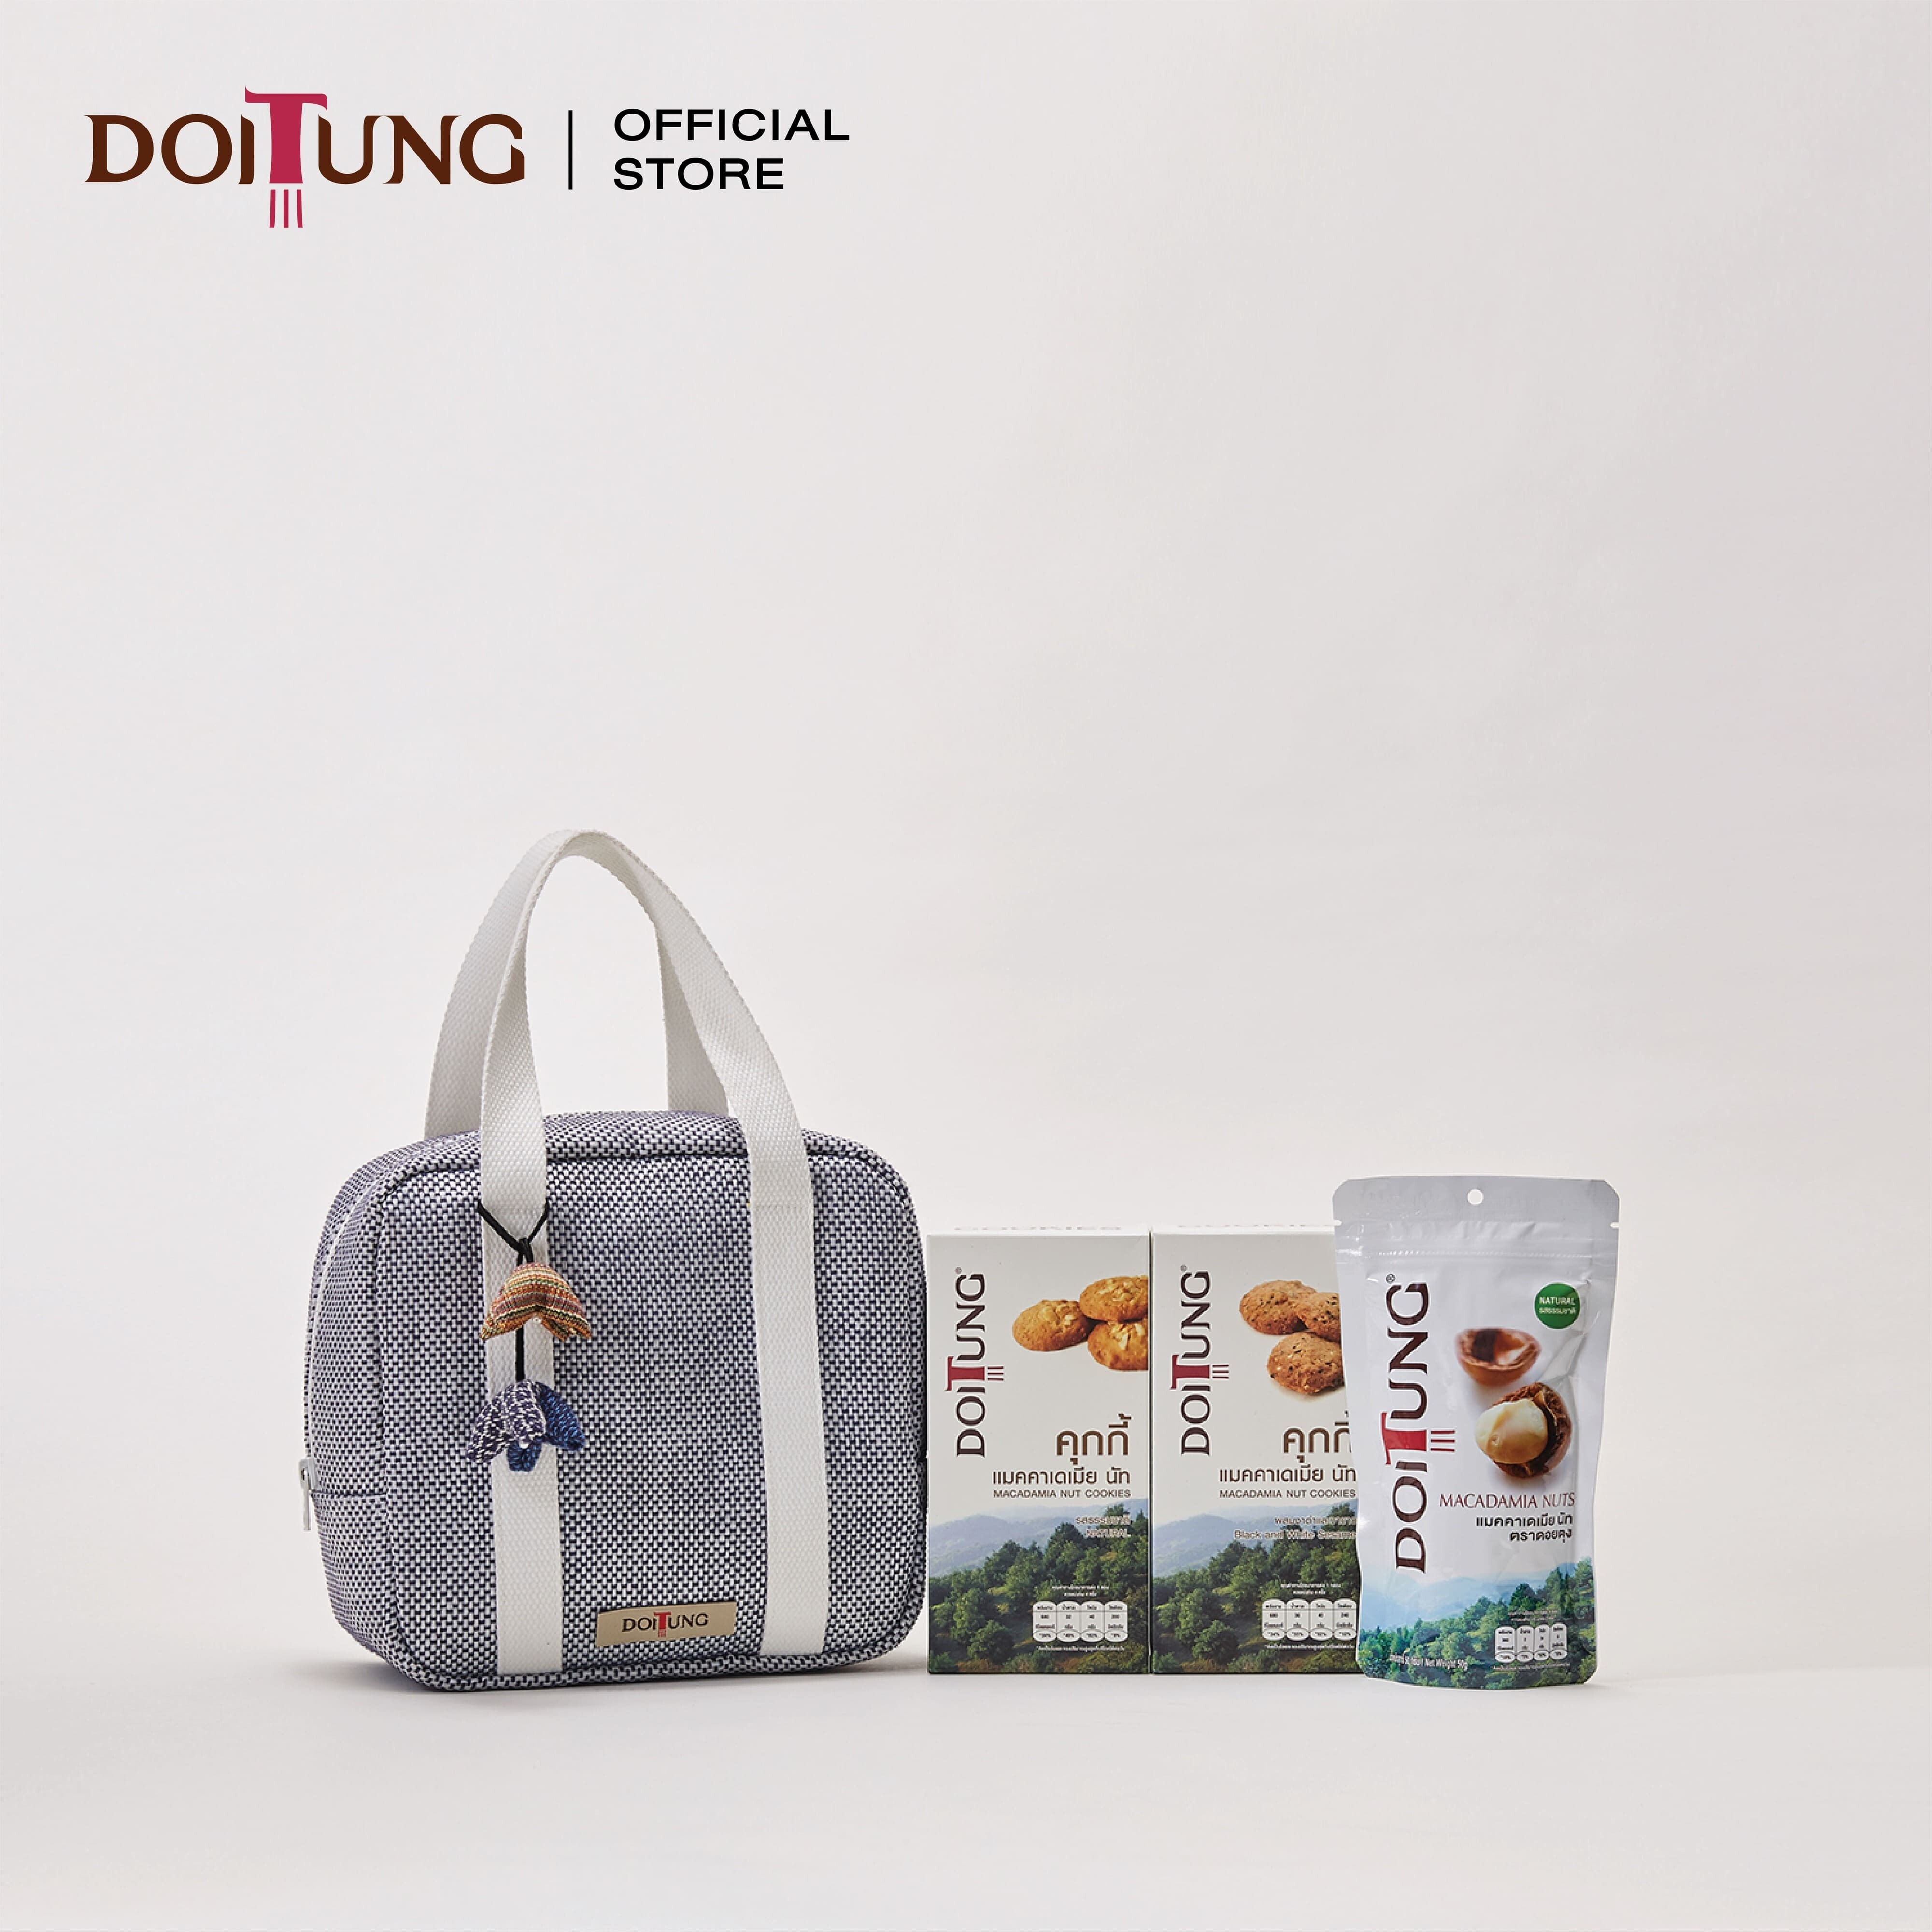 DoiTung Gift Set 2021 - Bag 1 กระเป๋า ของขวัญ กระเช้า ดอยตุง